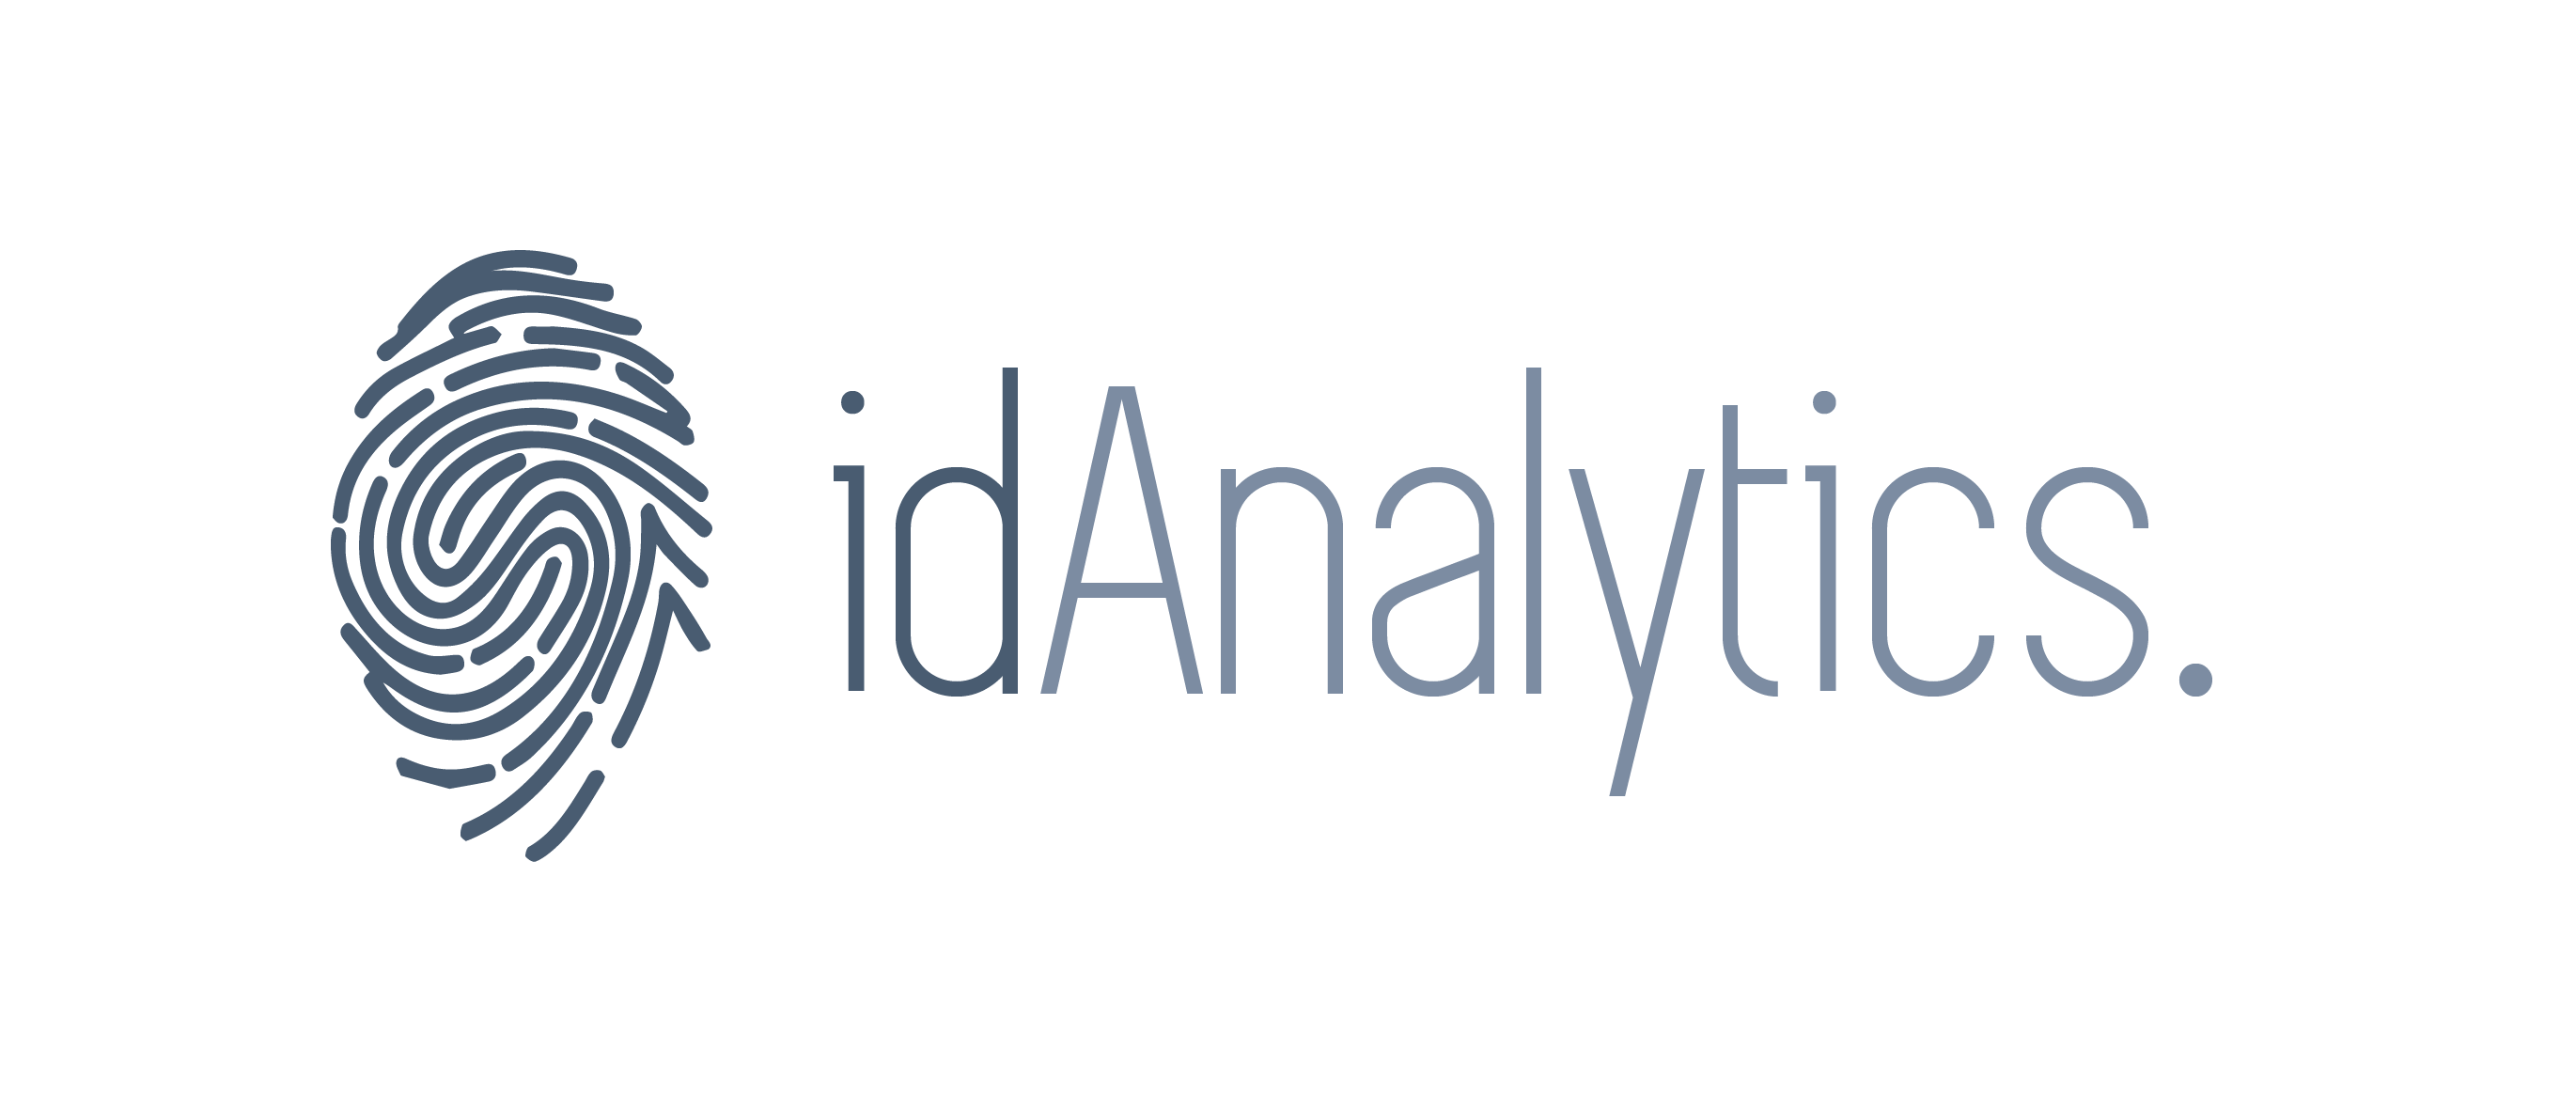 I+D Analytics Logo